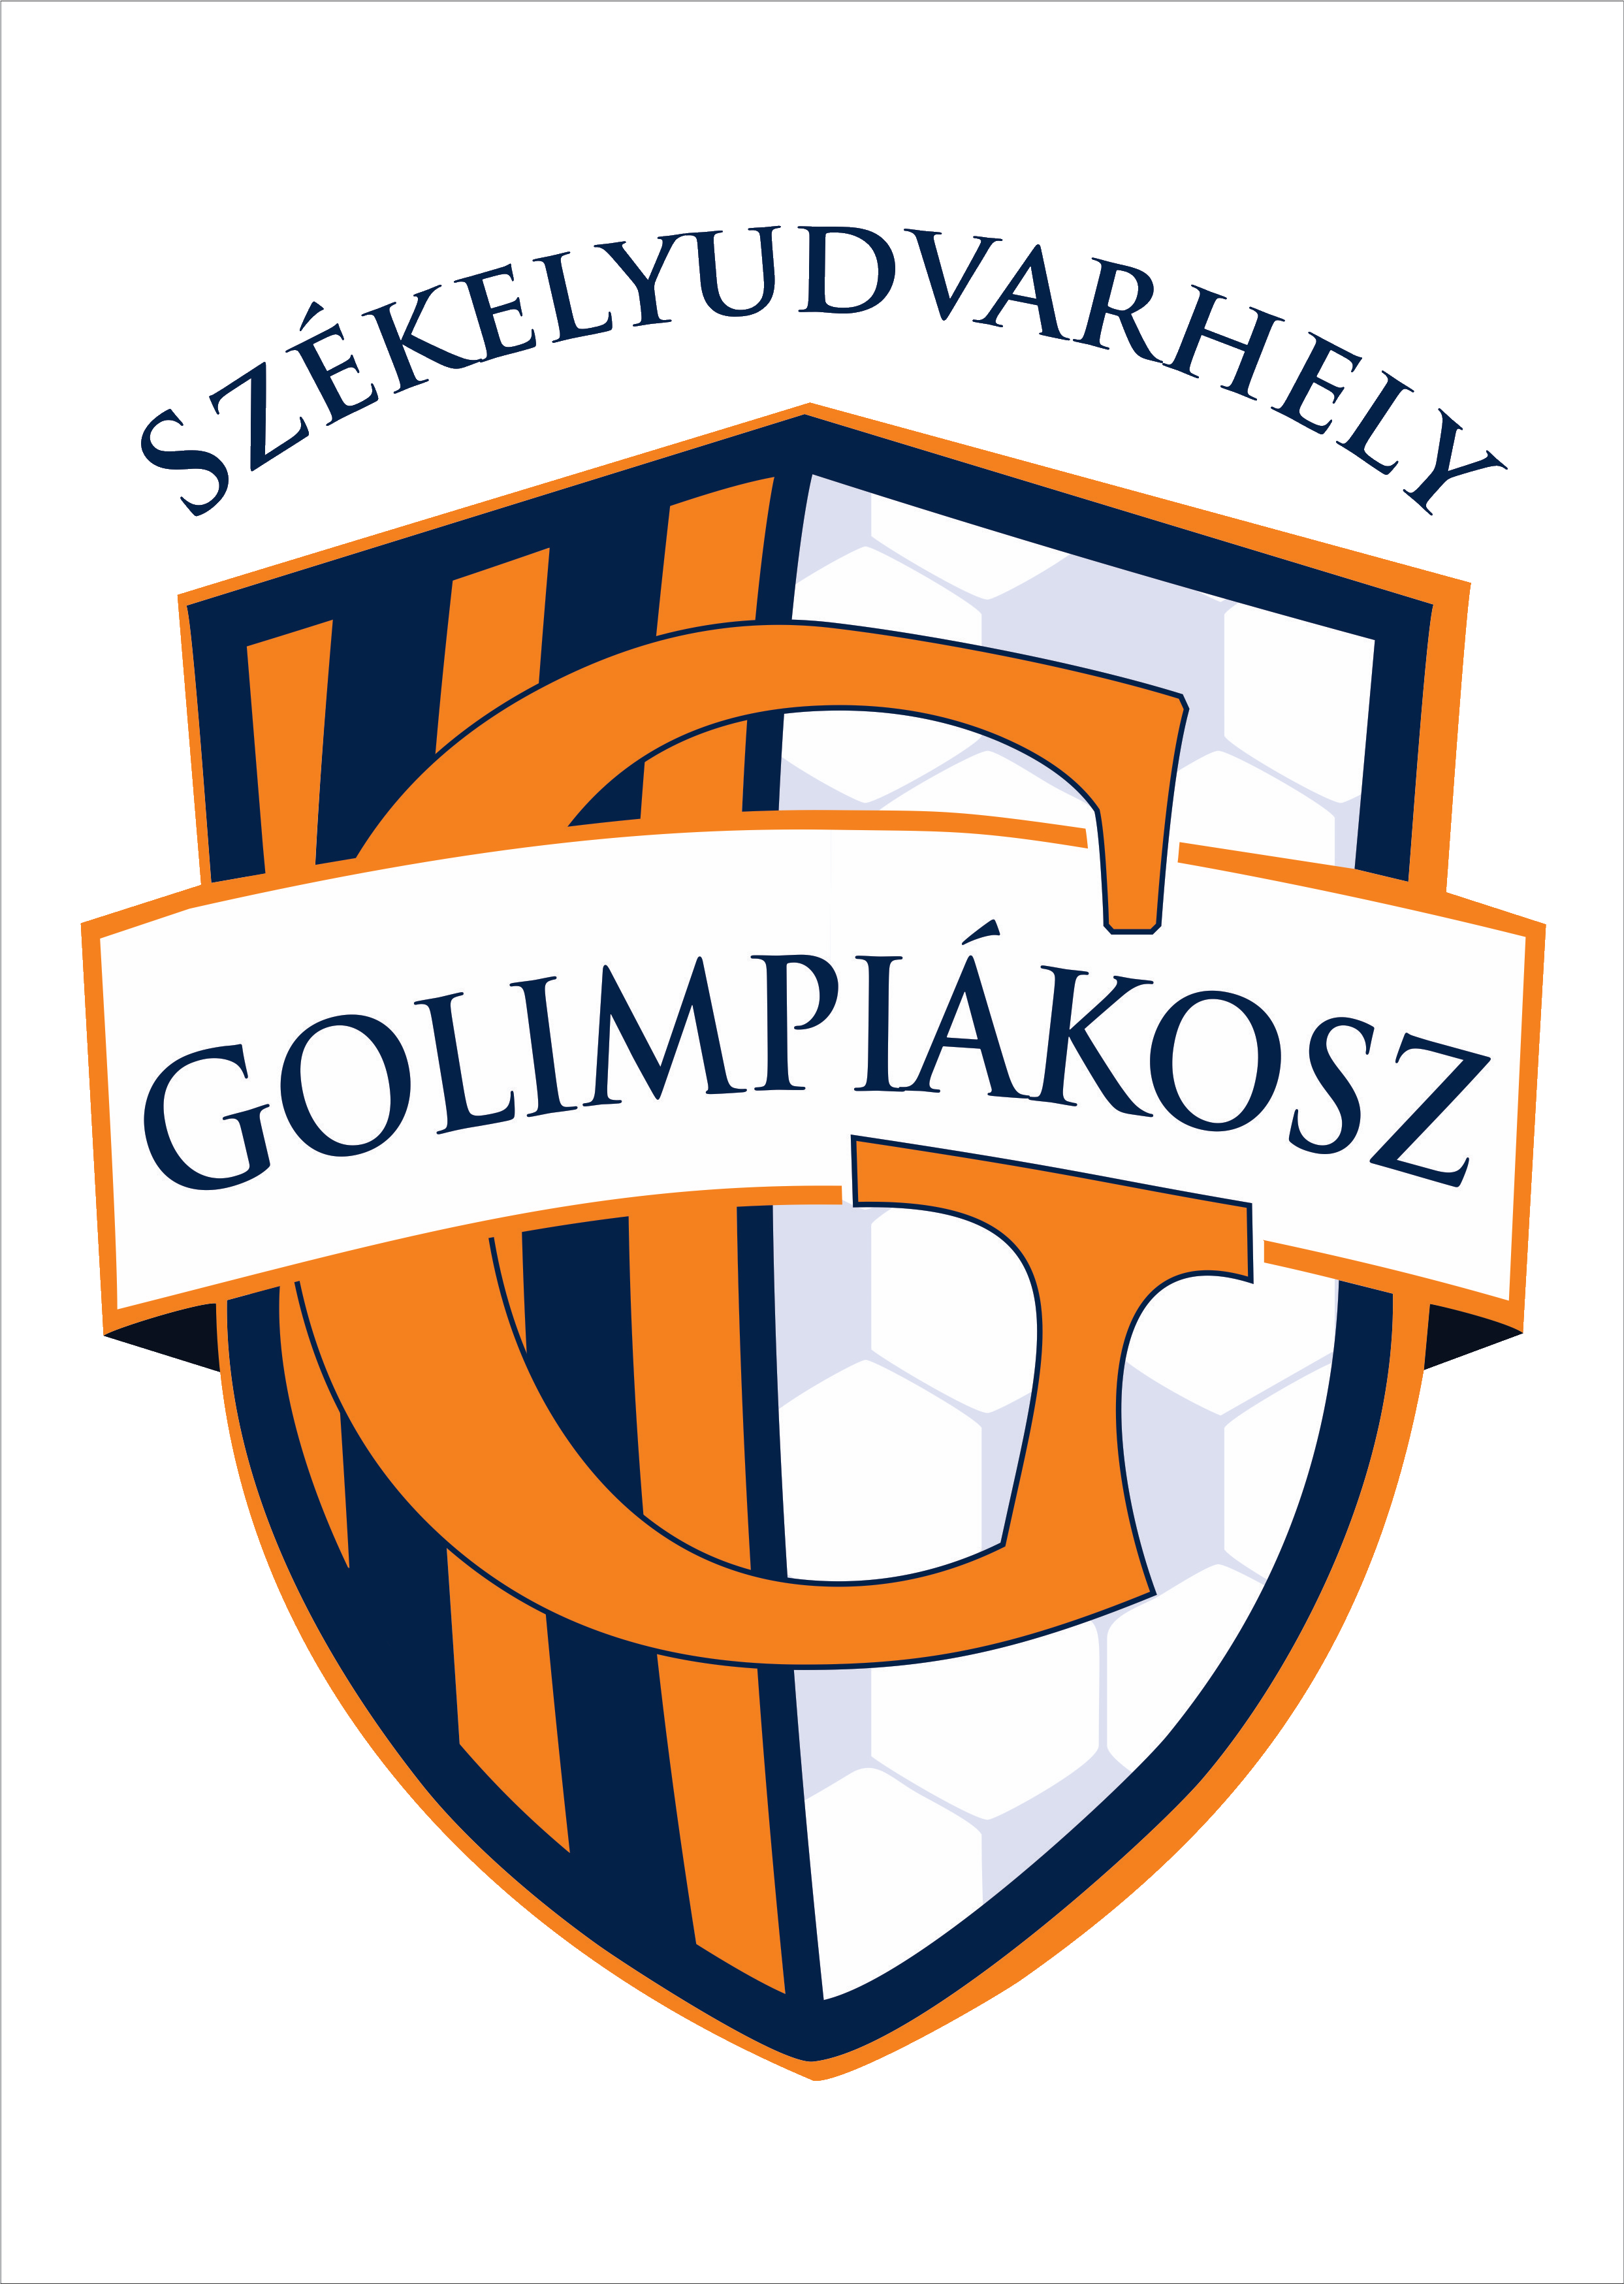 Wappen Golimpiákosz Székelyudvarhely SE  129430